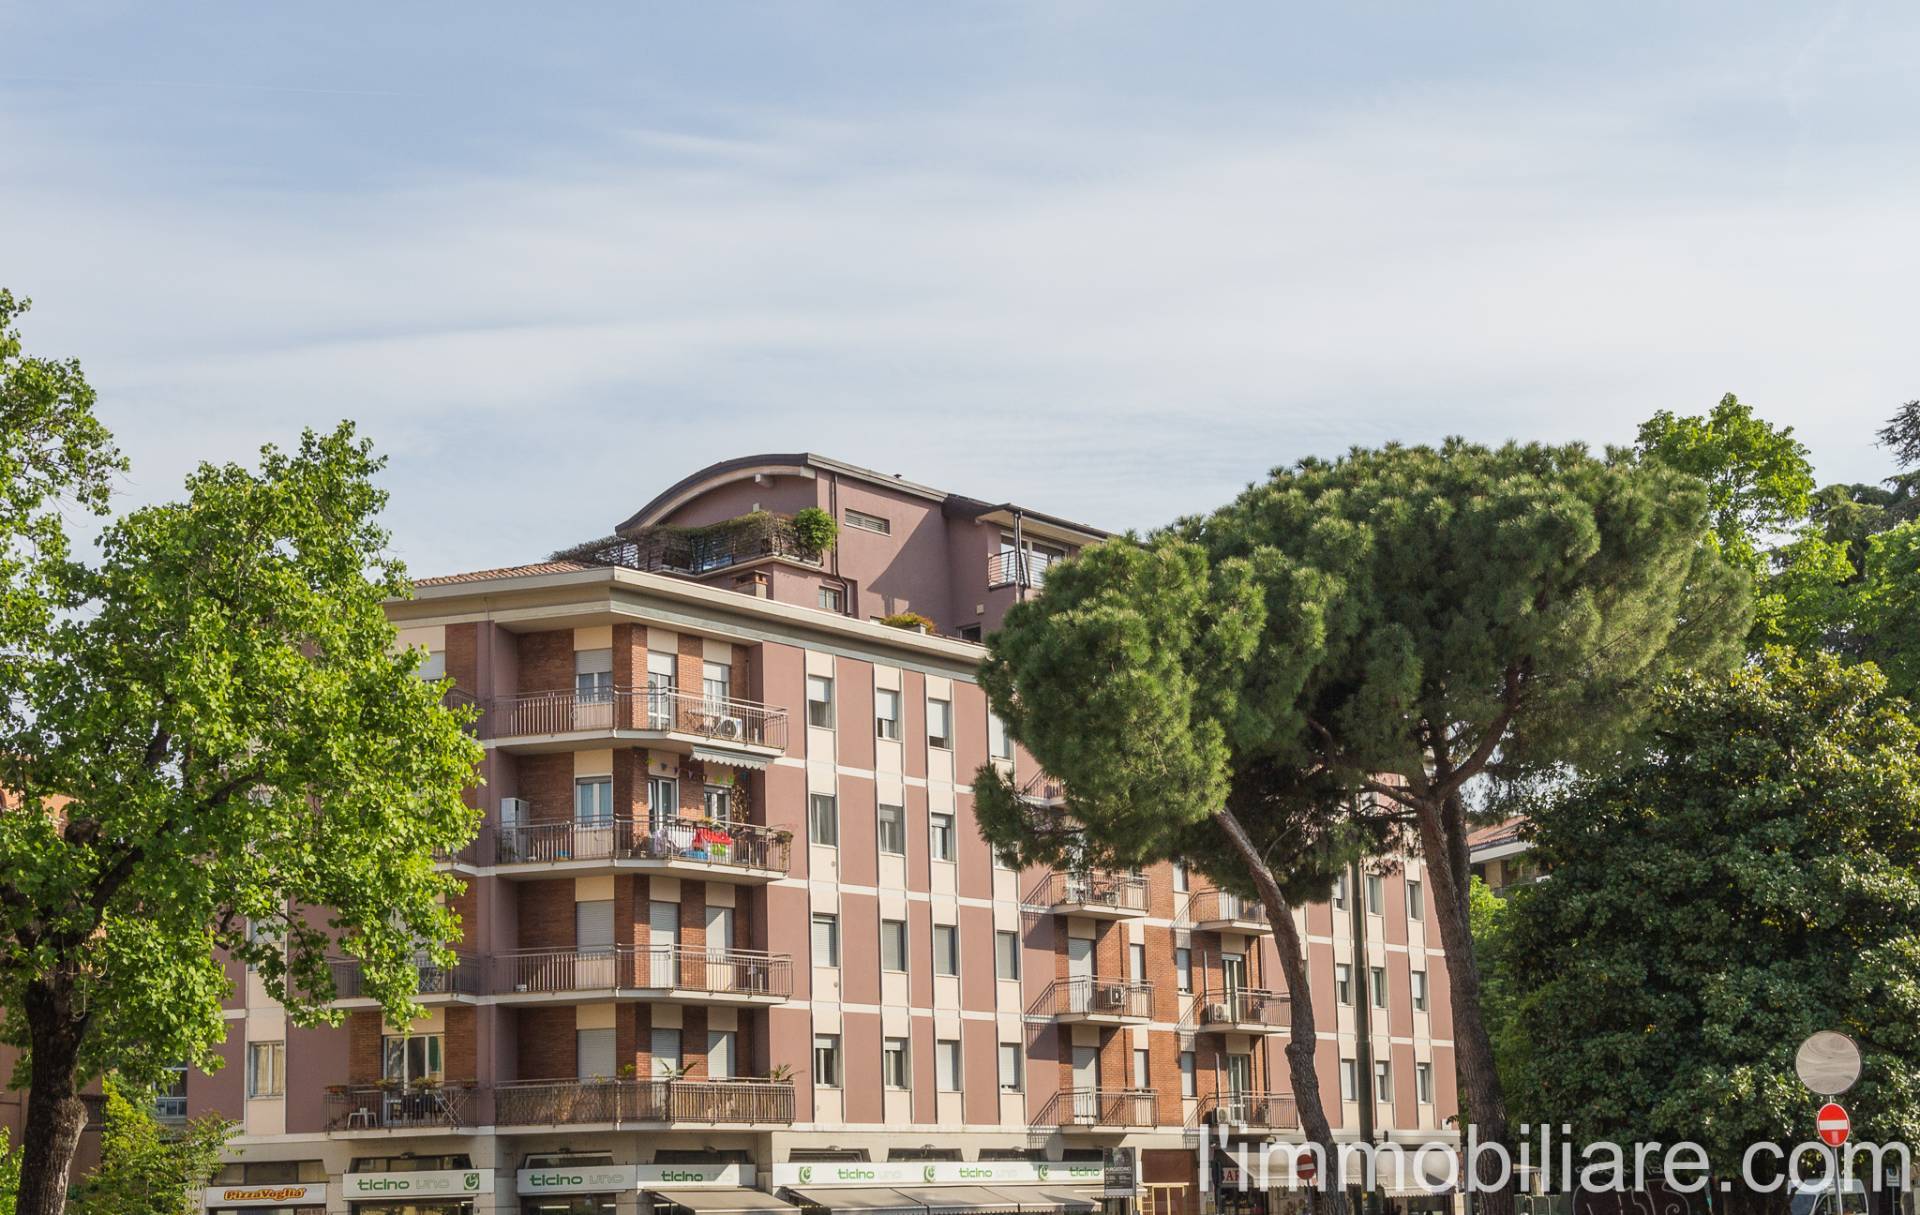 Appartamento in Vendita a Verona: 2 locali, 55 mq - Foto 9